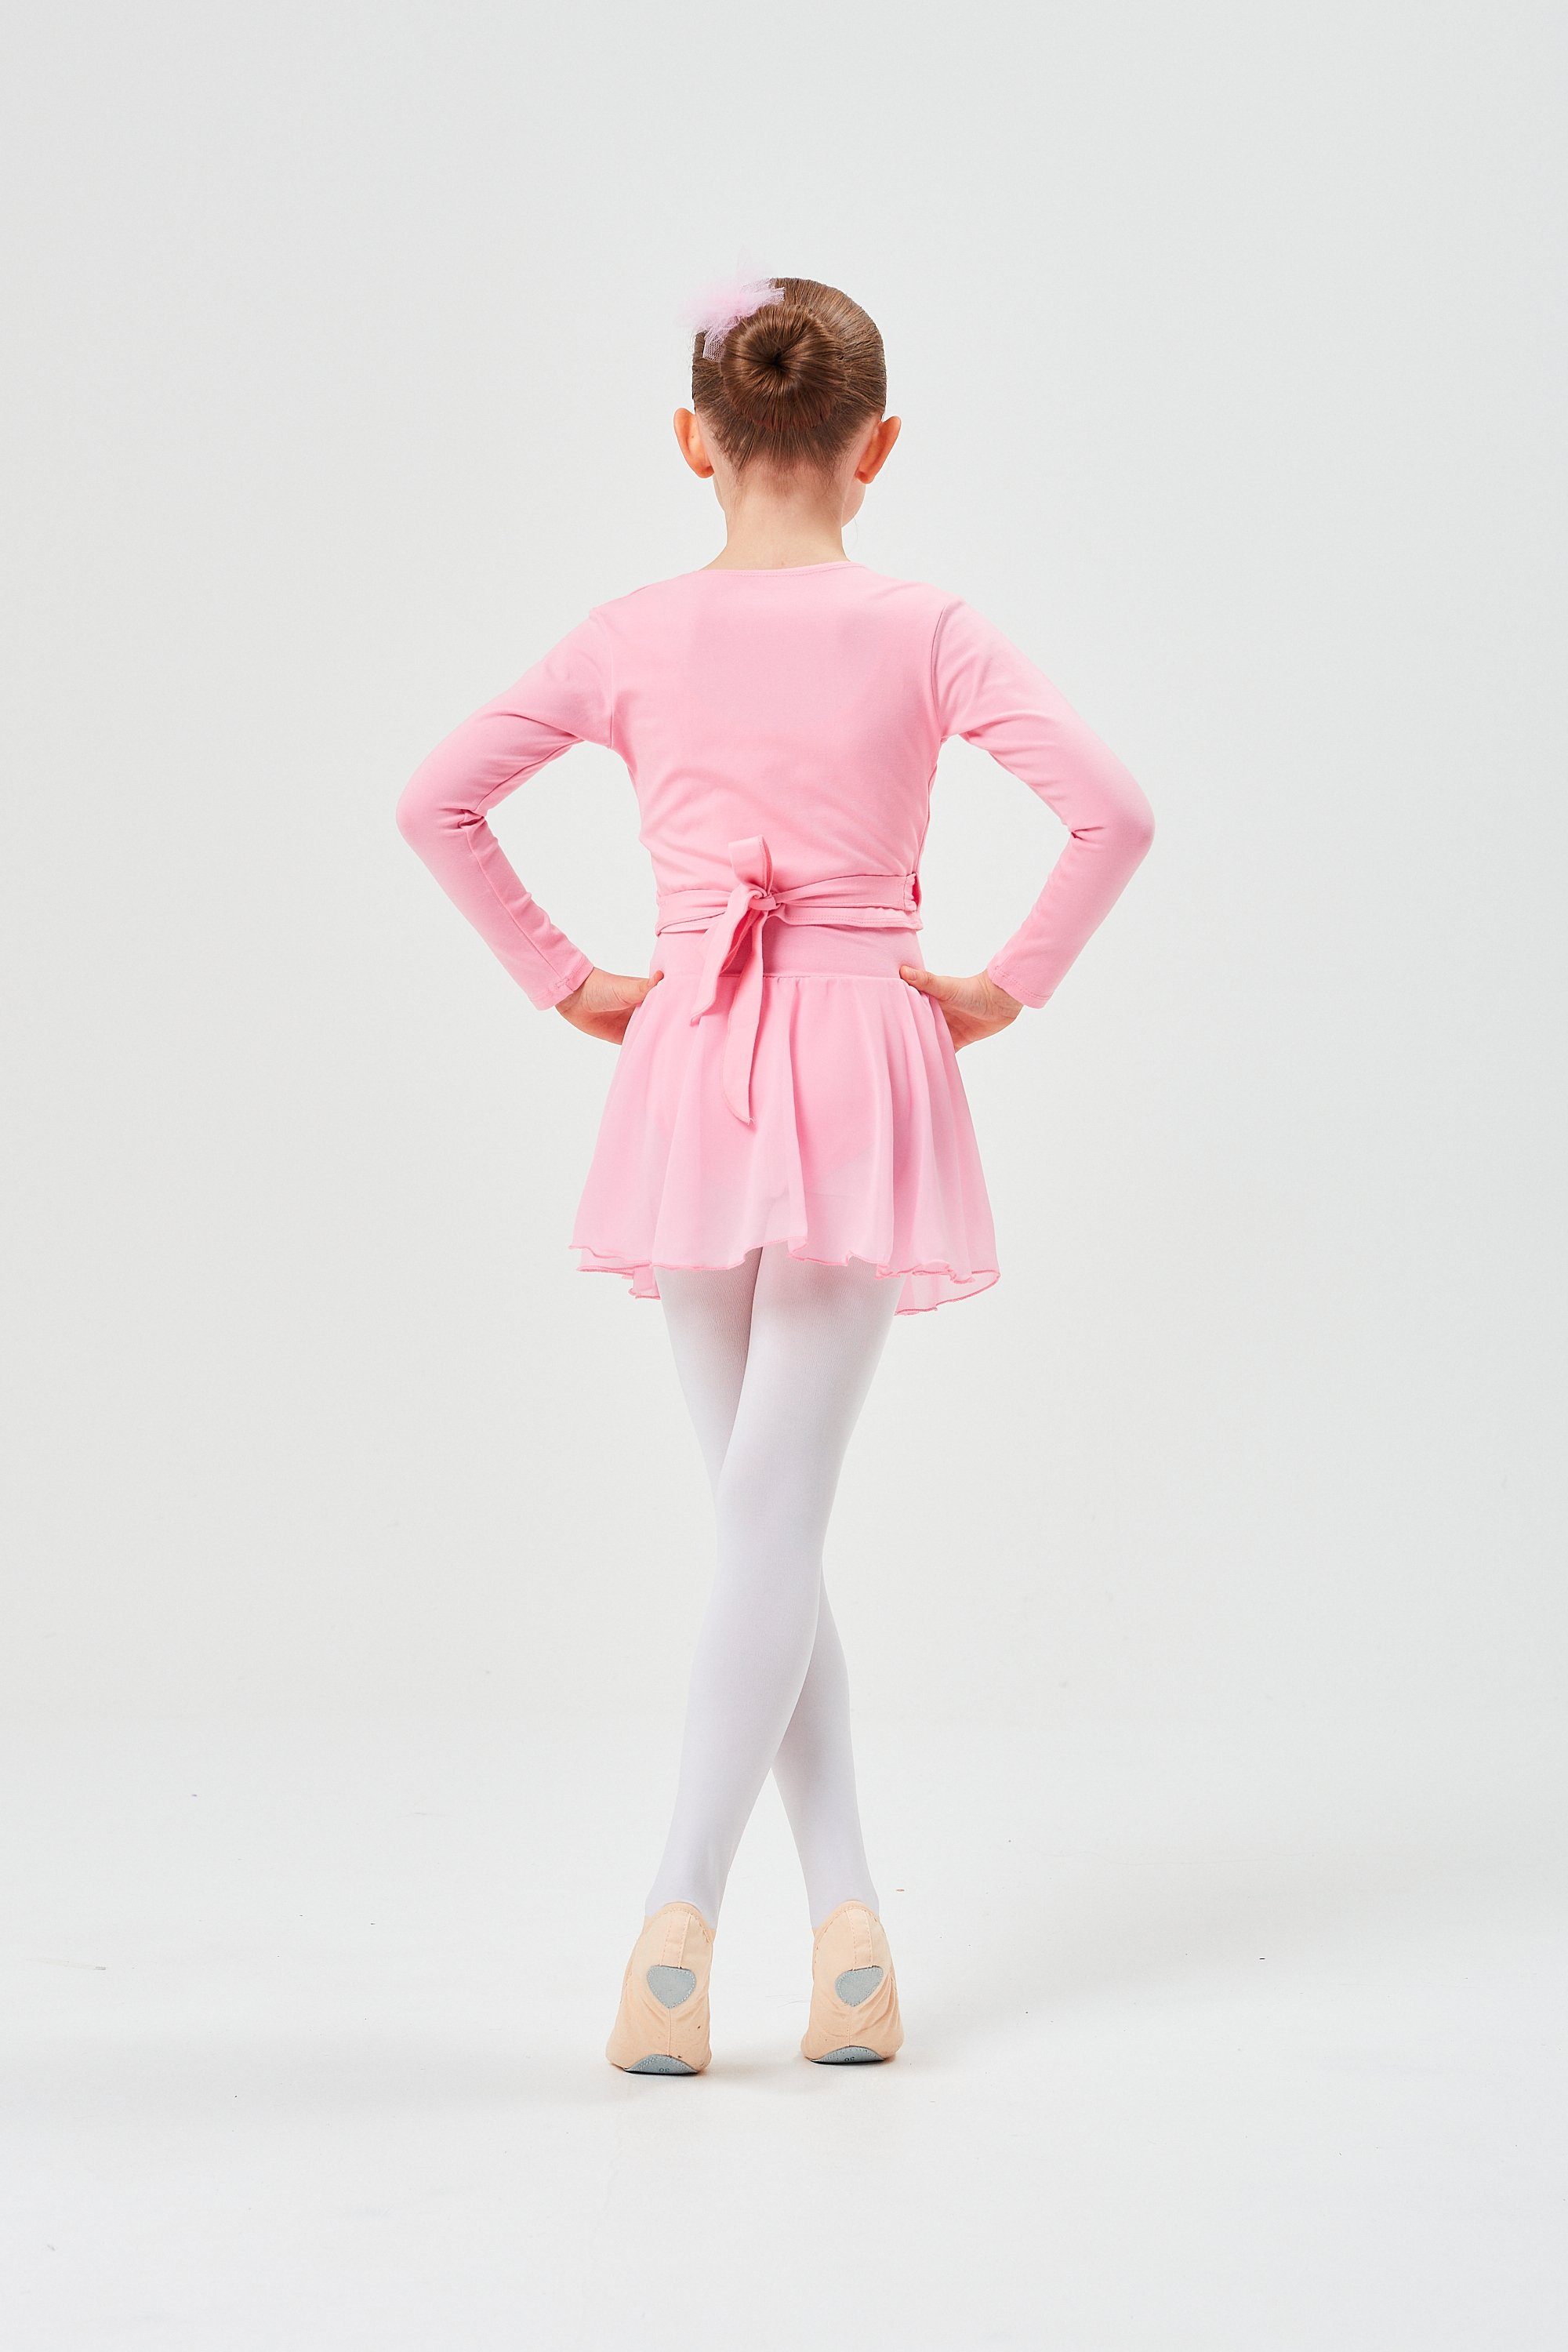 tanzmuster Sweatjacke aus rosa Mädchen Ballettjacke für Ballett Wickelacke Mandy weicher Baumwolle